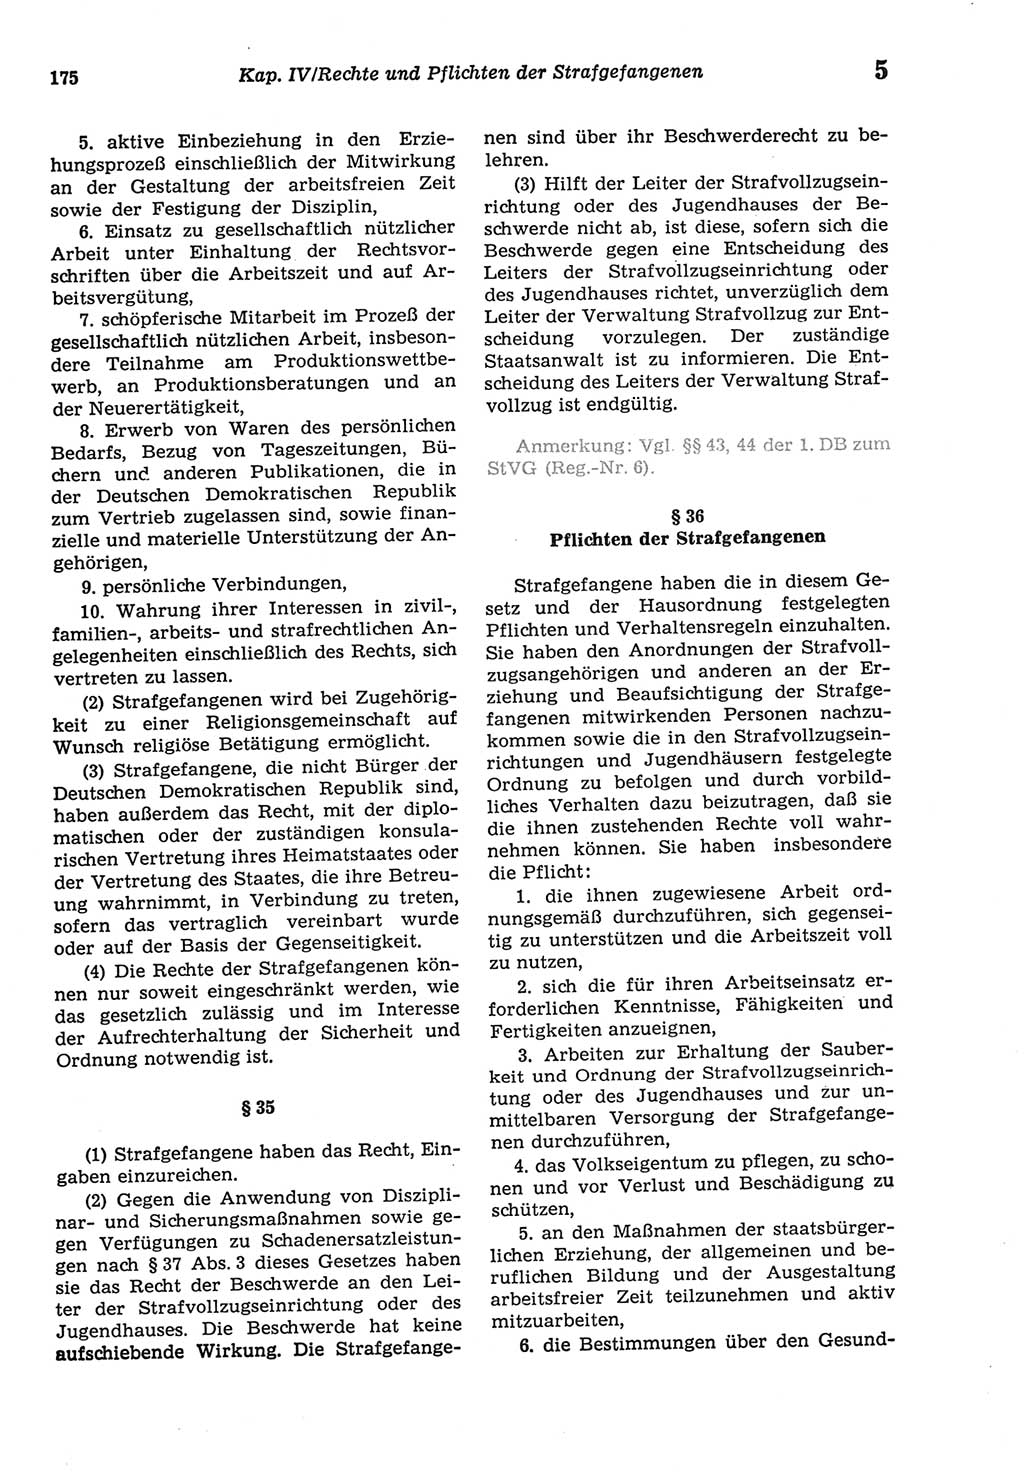 Strafprozeßordnung (StPO) der Deutschen Demokratischen Republik (DDR) sowie angrenzende Gesetze und Bestimmungen 1977, Seite 175 (StPO DDR Ges. Best. 1977, S. 175)